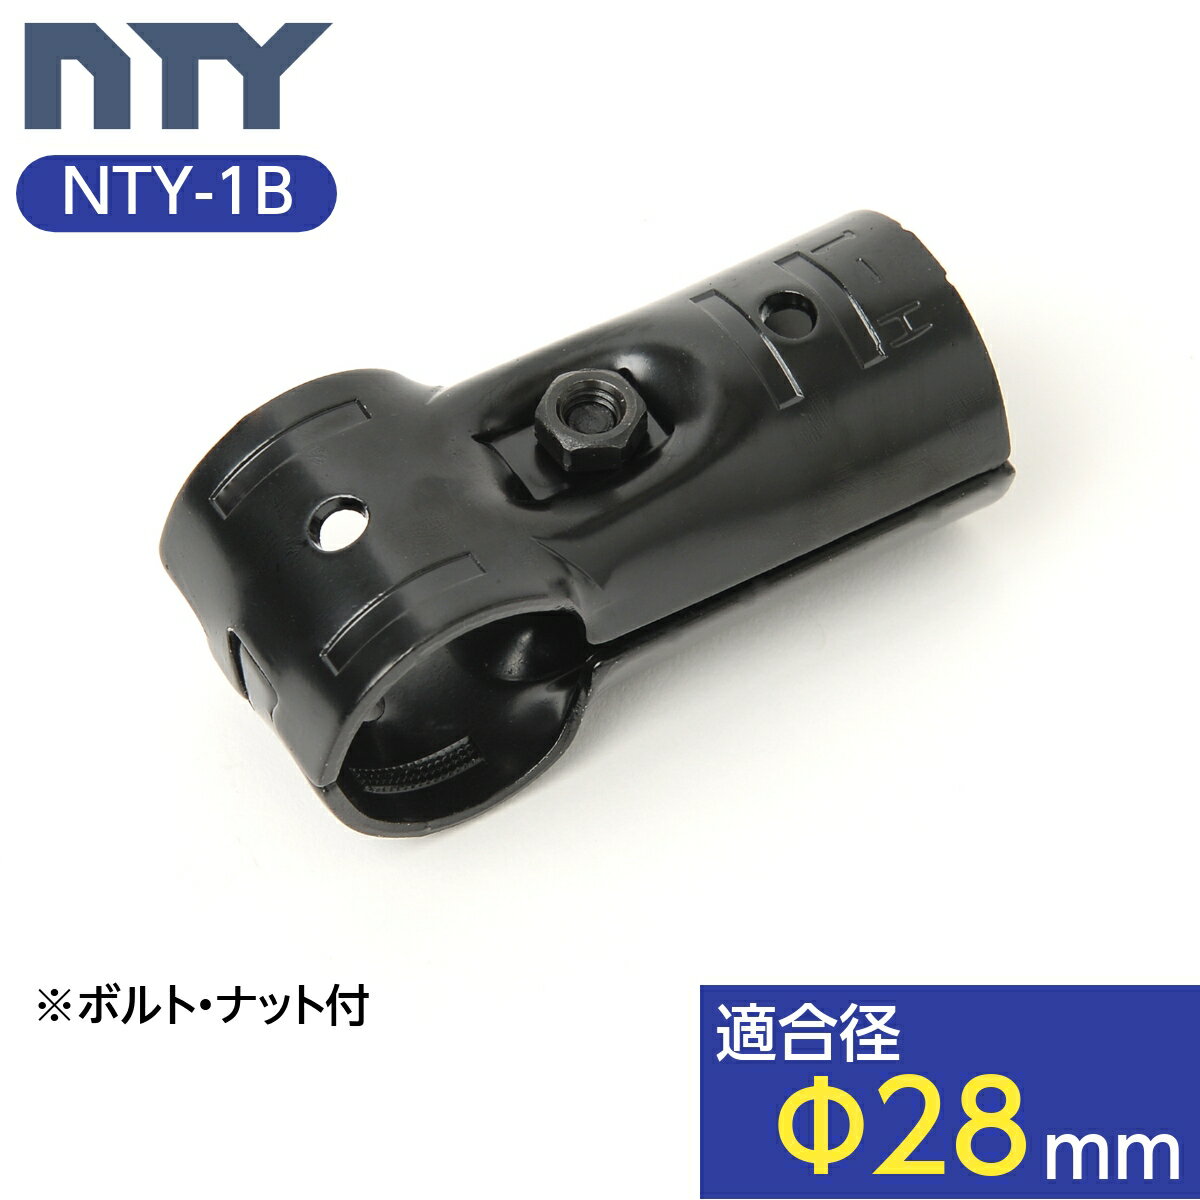 NTY製 メタルジョイント NTY-1B ブラック Φ28mm用 (イレクターメタルジョイントのHJ-1と互換性あり) 組立て パイプ T…